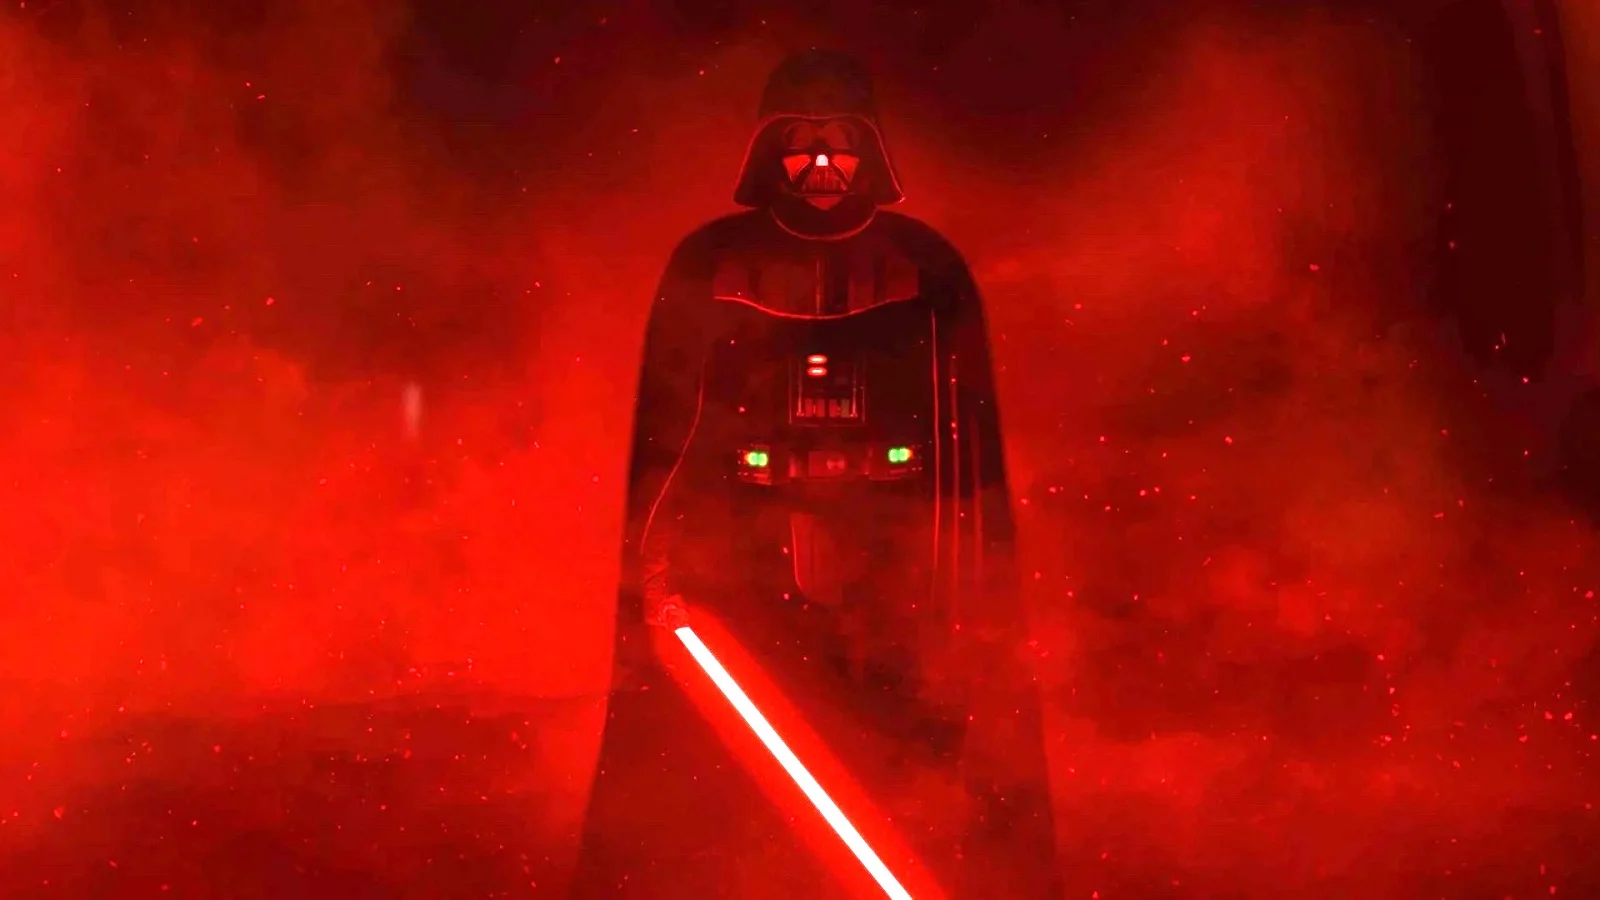 Ο James Earl Jones, η φωνή του Darth Vader, επιτρέπει στην τεχνητή νοημοσύνη να αναλάβει τον ρόλο του